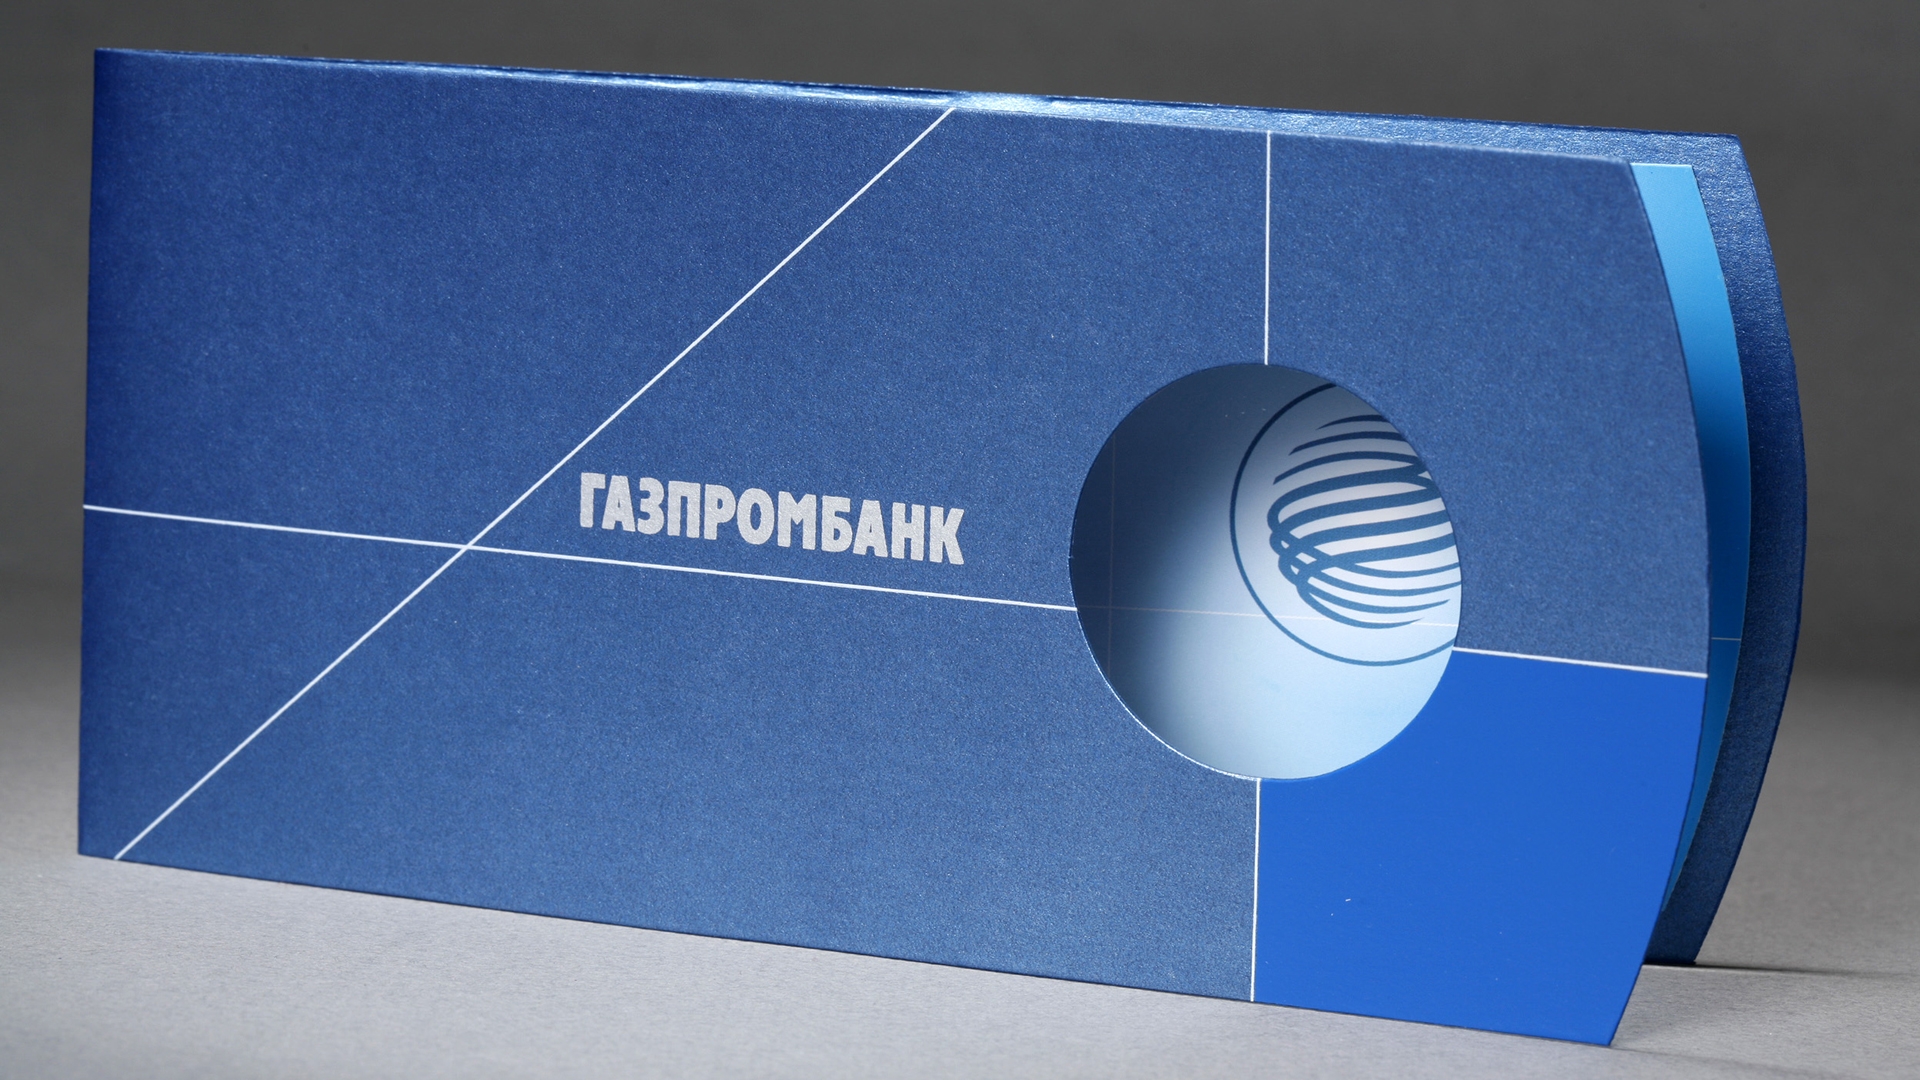 Газпромбанк - Папка для презентационных материалов